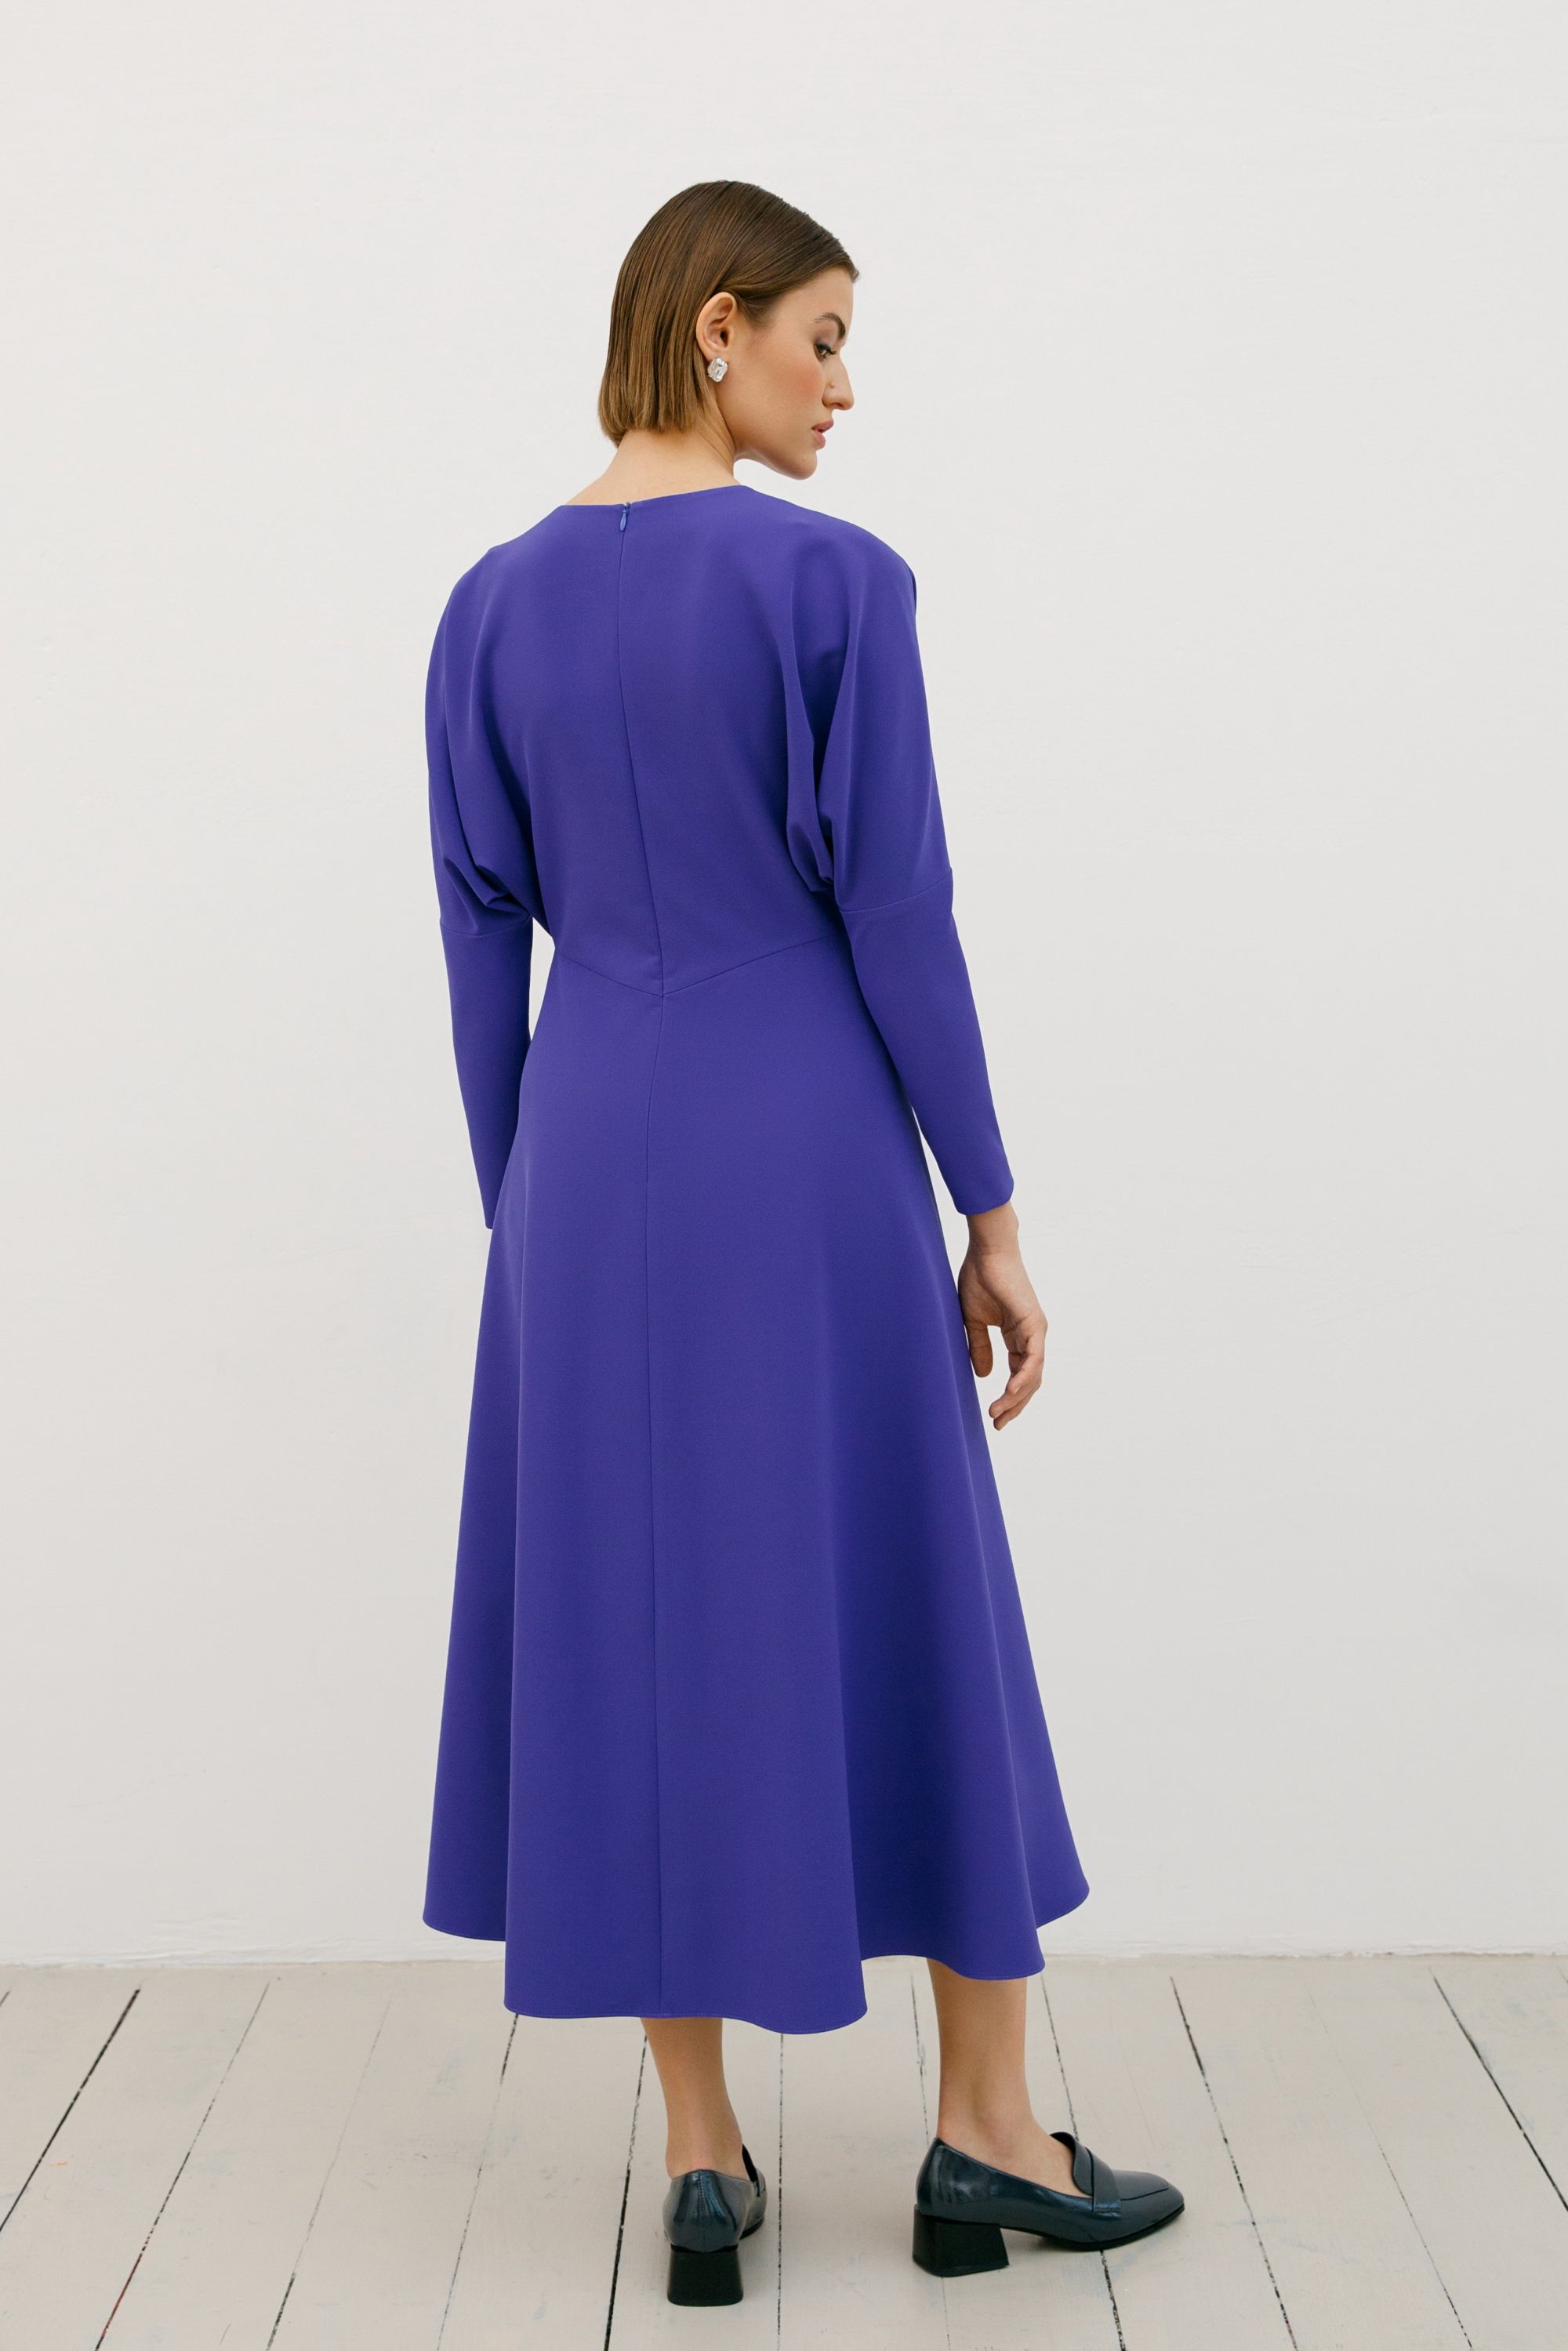 Dress, pattern №798 buy online